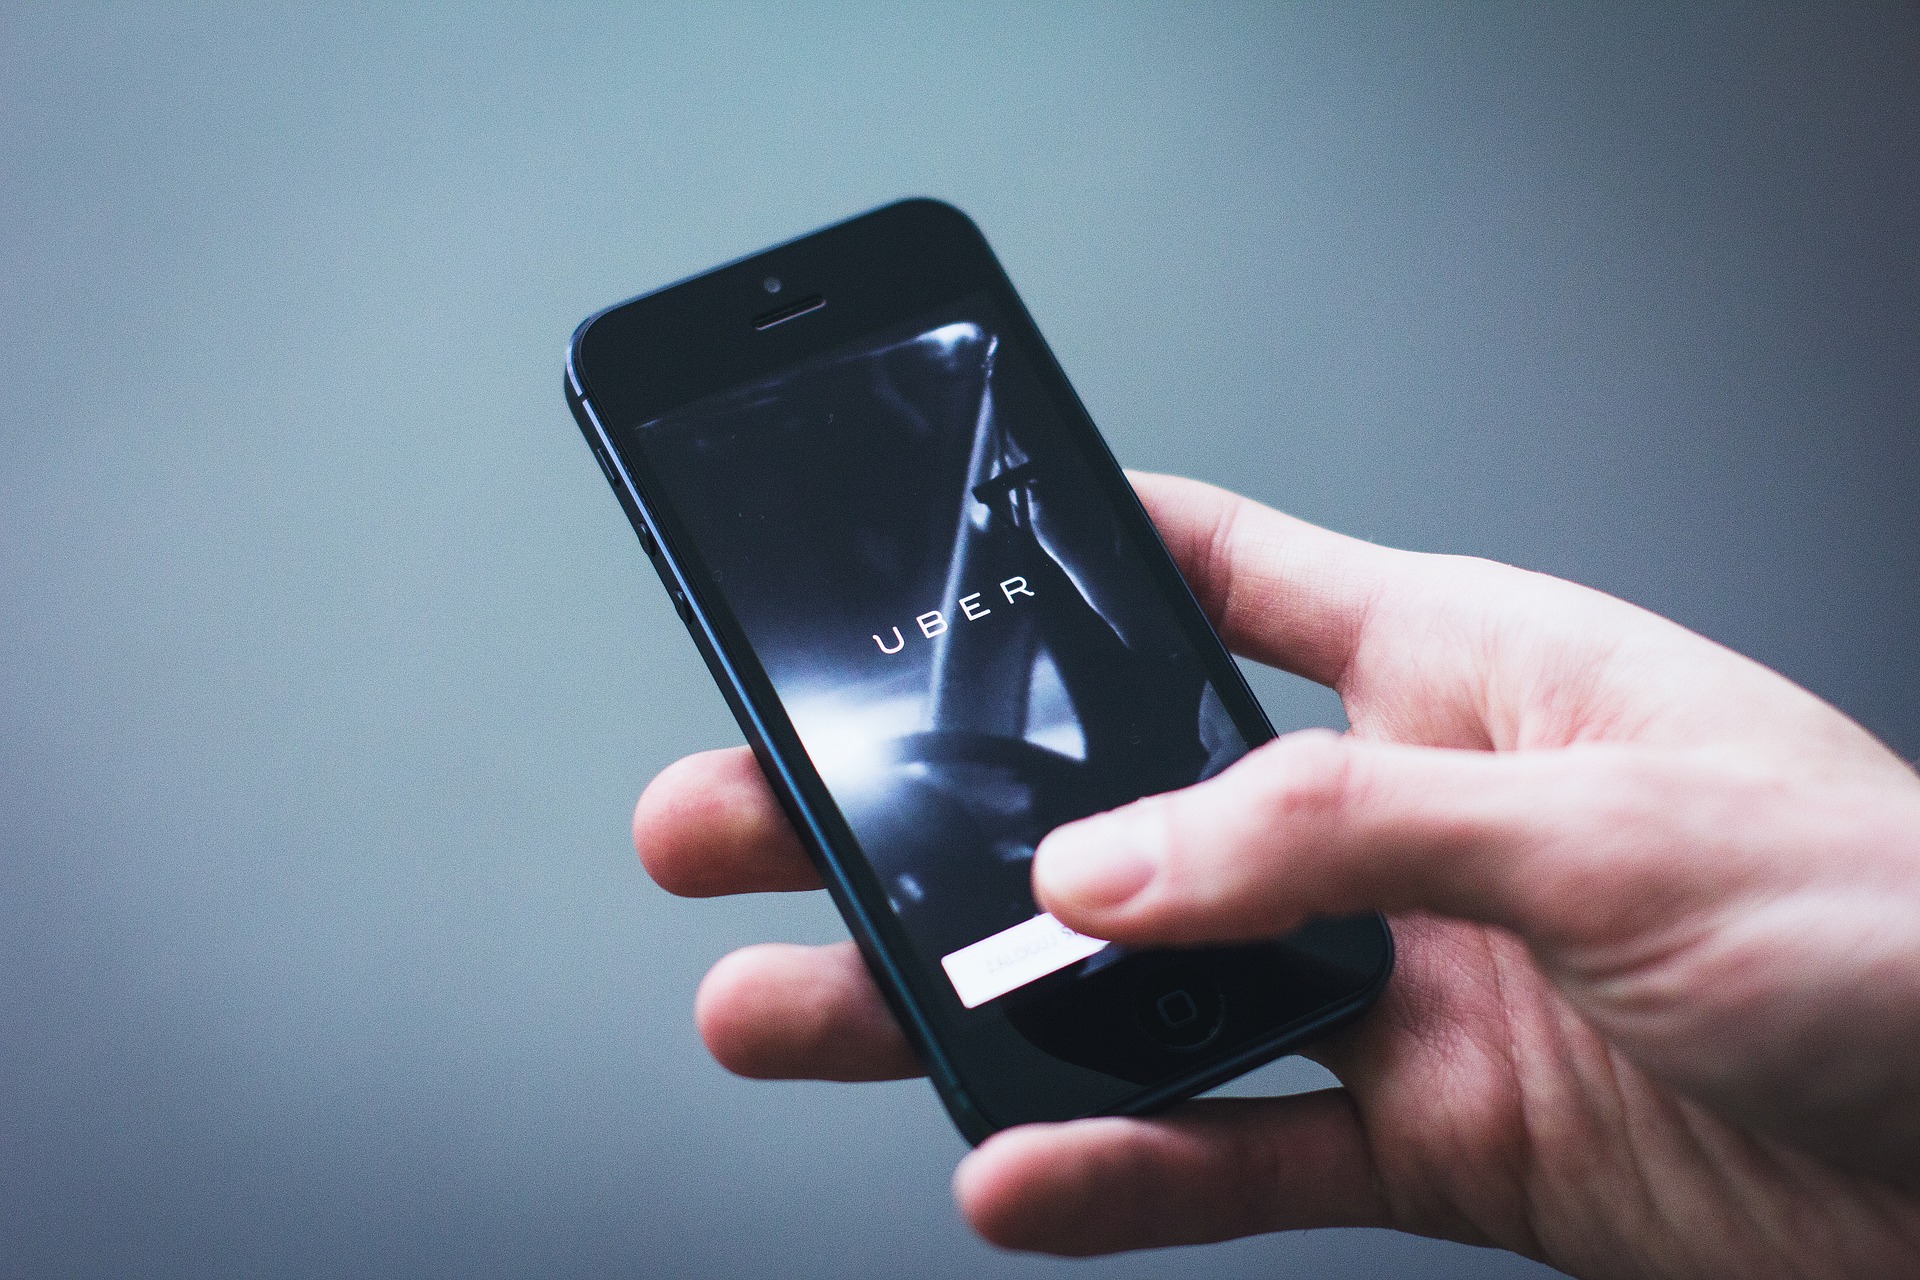 El cofundador y exconsejero delegado de Uber, Travis Kalanick, vendió en las últimas semanas acciones de la empresa. (Foto Prensa Libre: Pixabay)